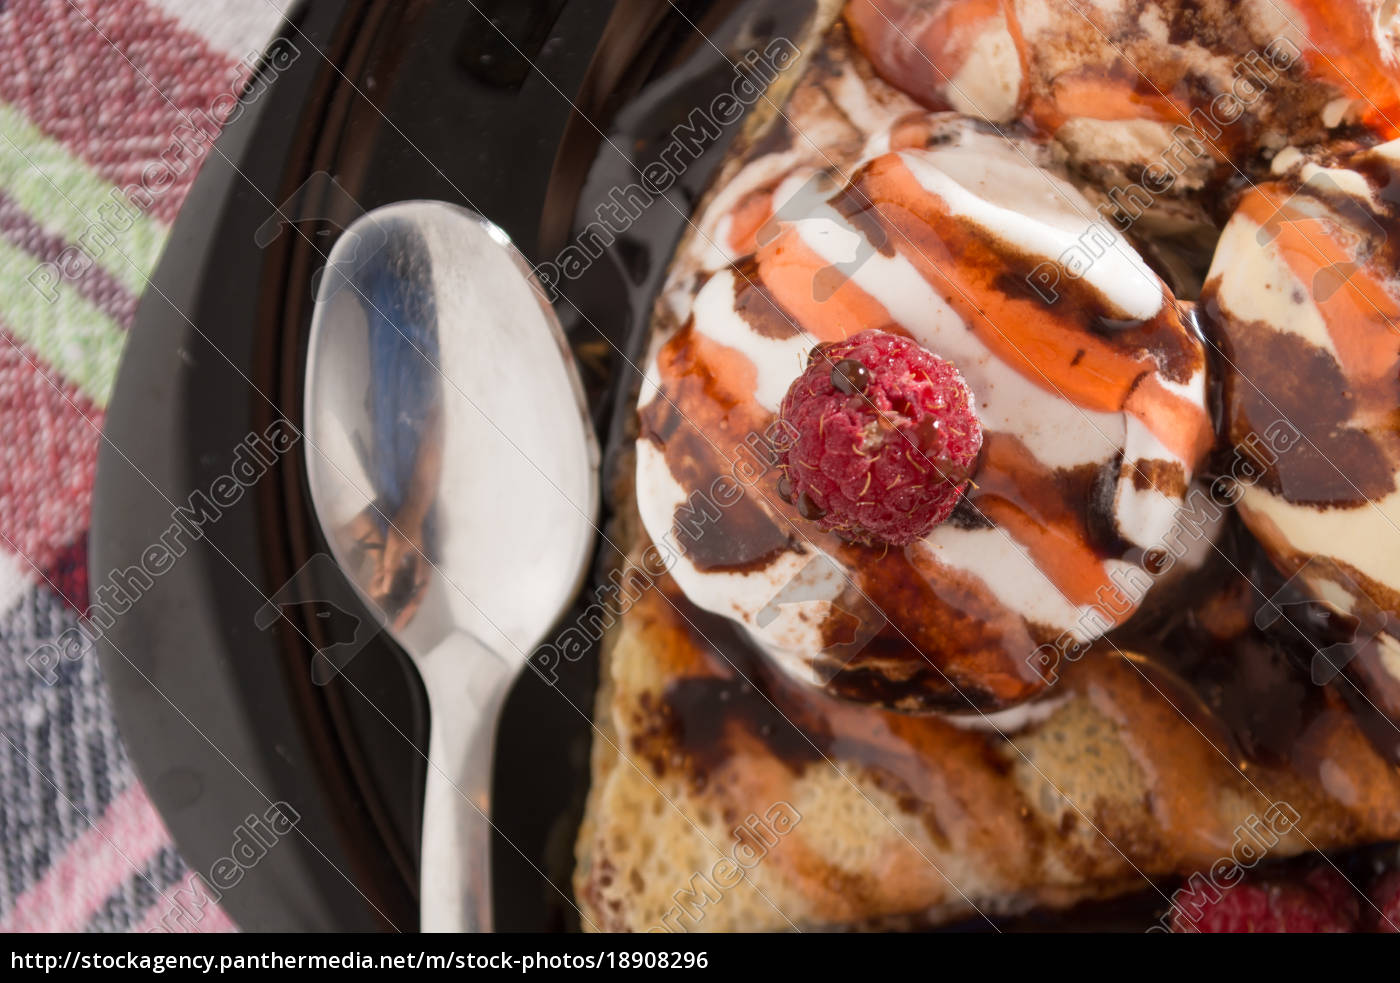 frisch goldene pfannkuchen mit früchten und sahne - Lizenzfreies Foto ...